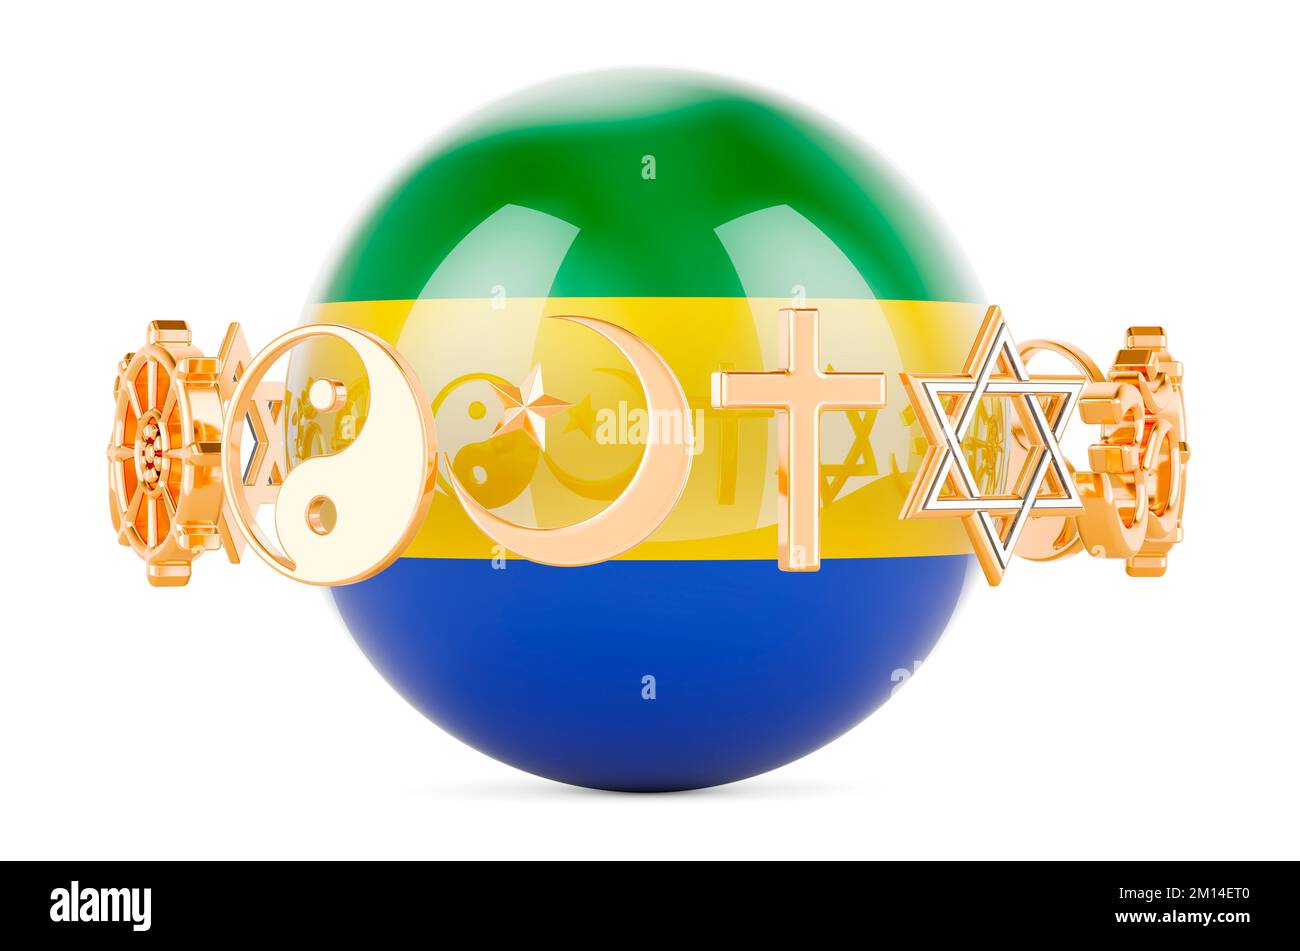 Bandiera gabonese dipinta sulla sfera con simboli religiosi intorno, 3D che rende isolato su sfondo bianco Foto Stock